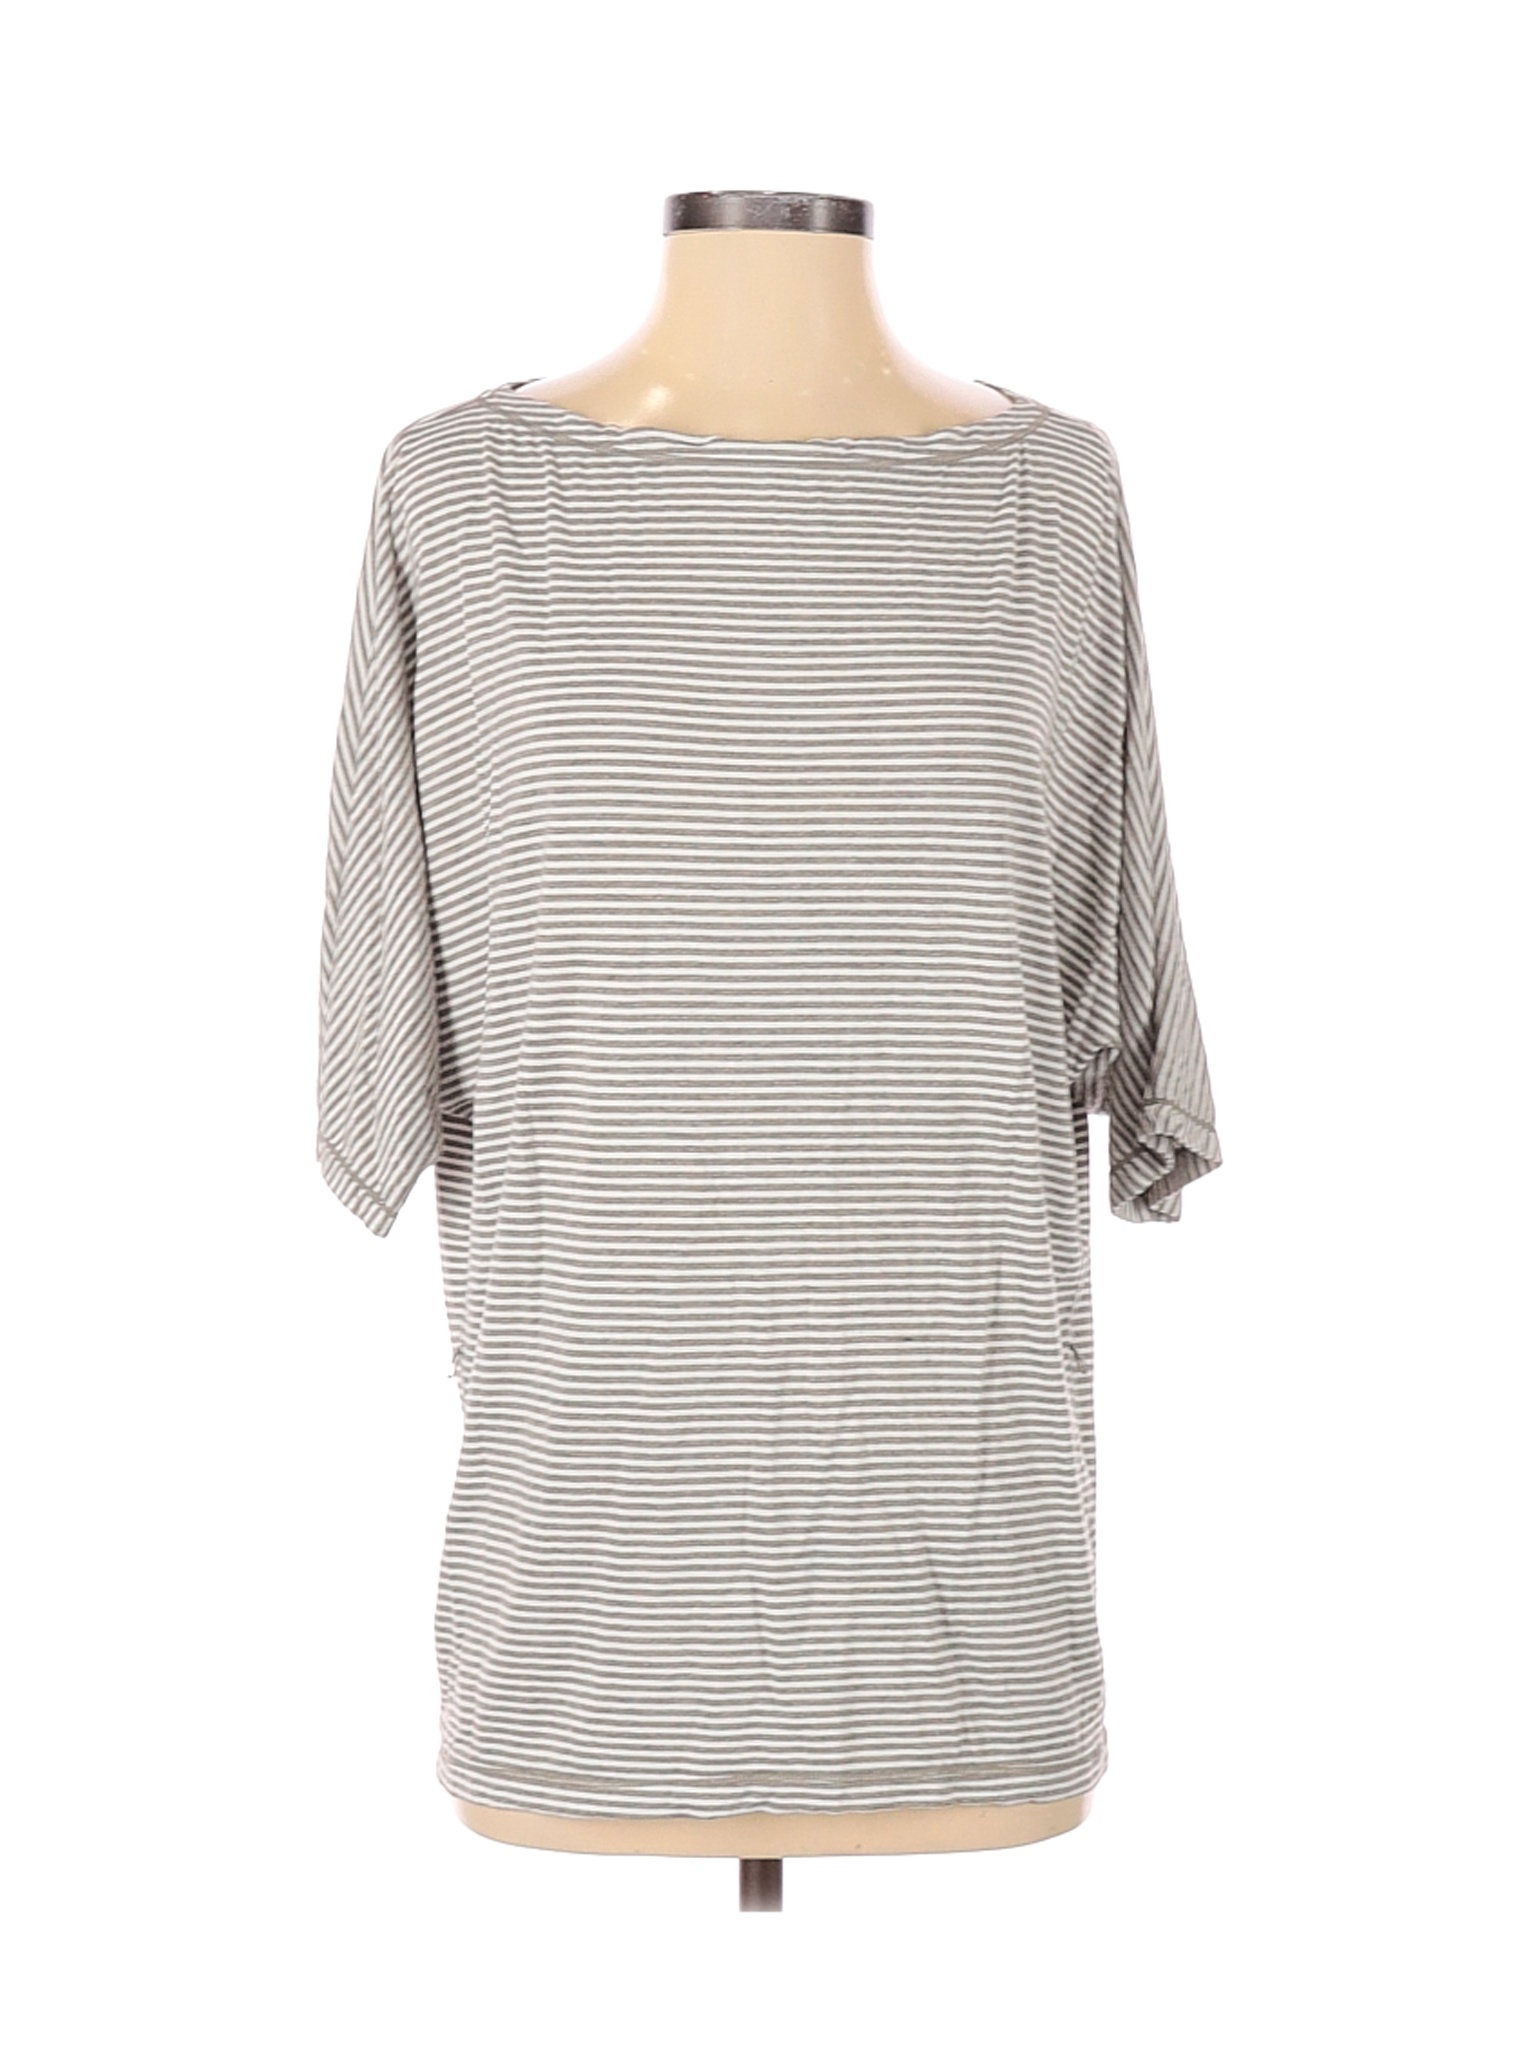 Max Studio Women Gray 3/4 Sleeve T-Shirt XS | eBay